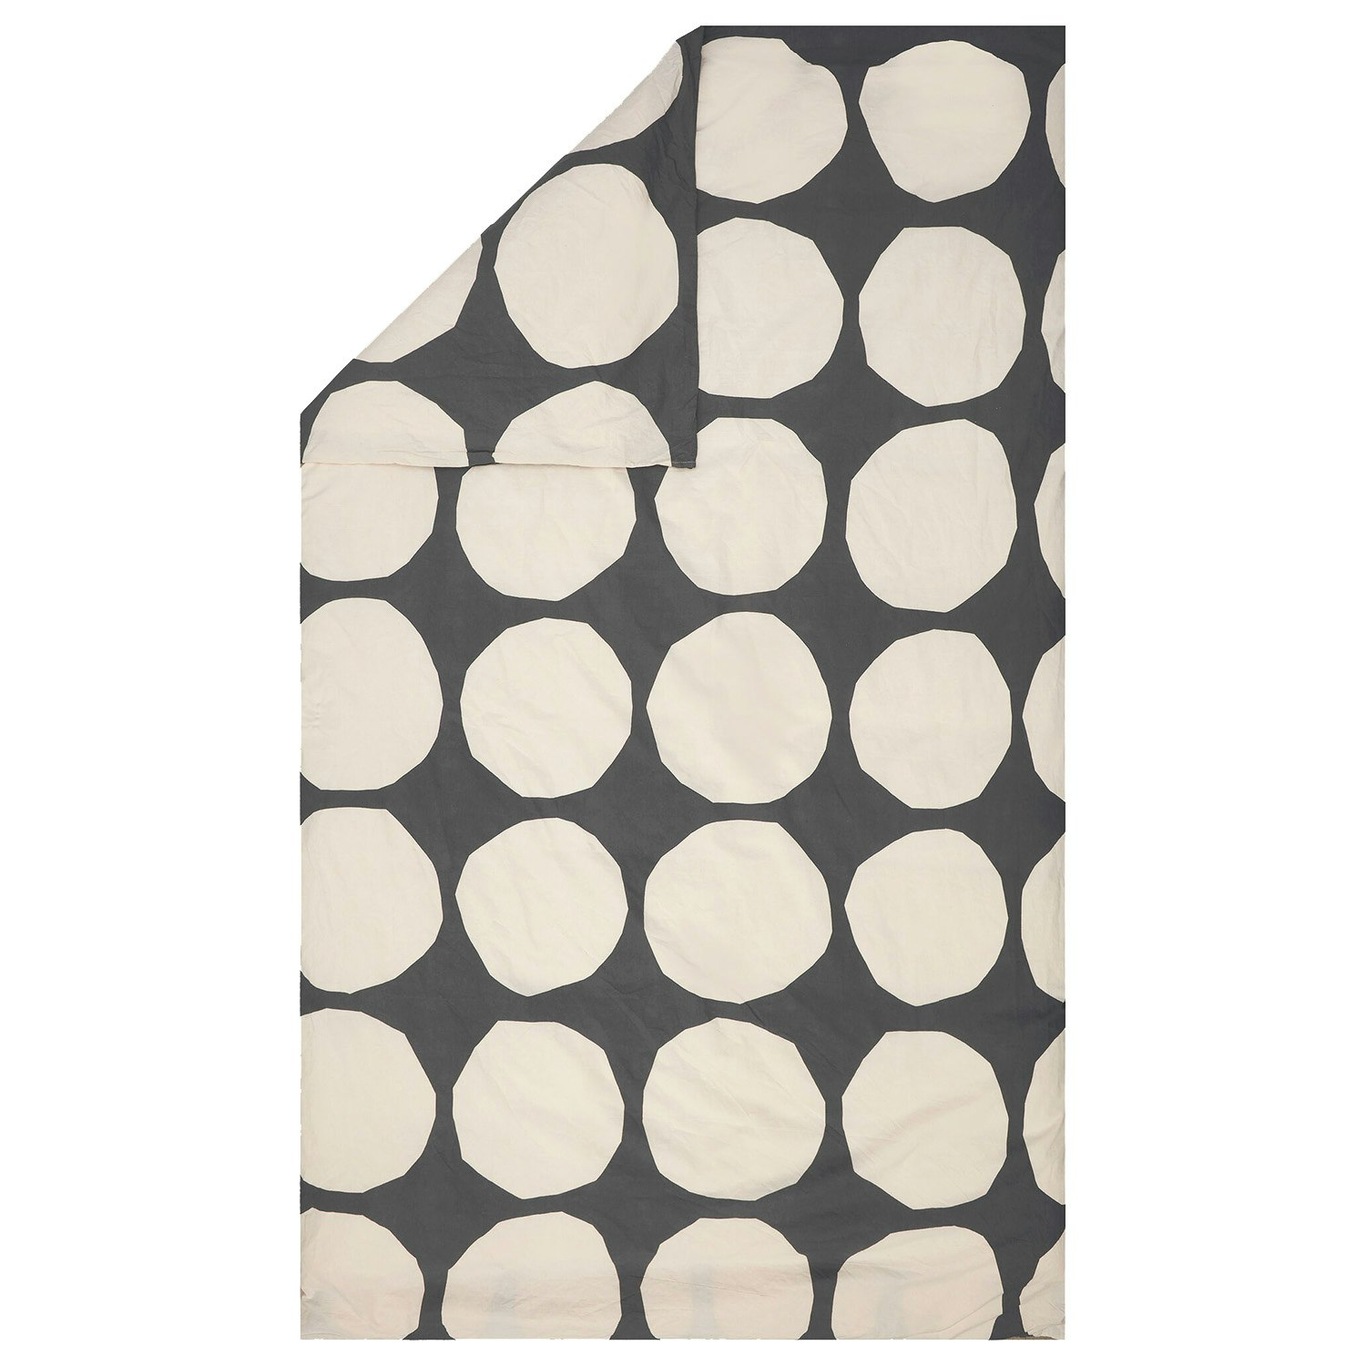 Kivet Duvet Cover Off-white/Charcoal, 150x210 cm